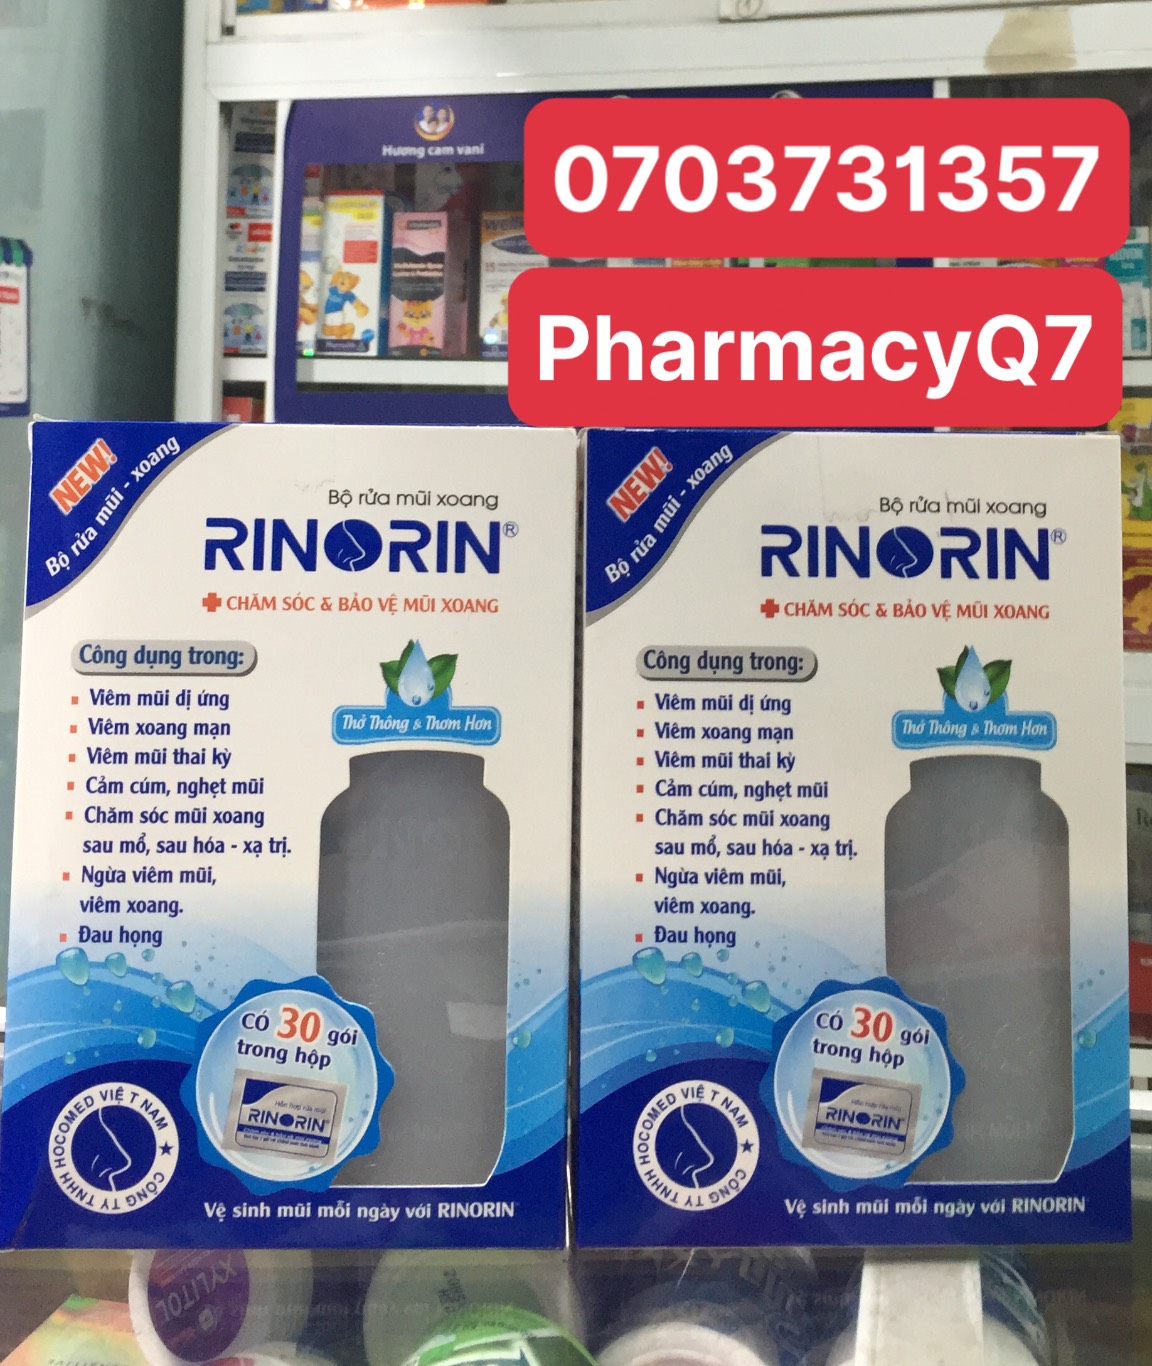 Bình rửa mũi xoang RINORIN kèm 30 gói muối, dùng cho mọi lứa tuổi